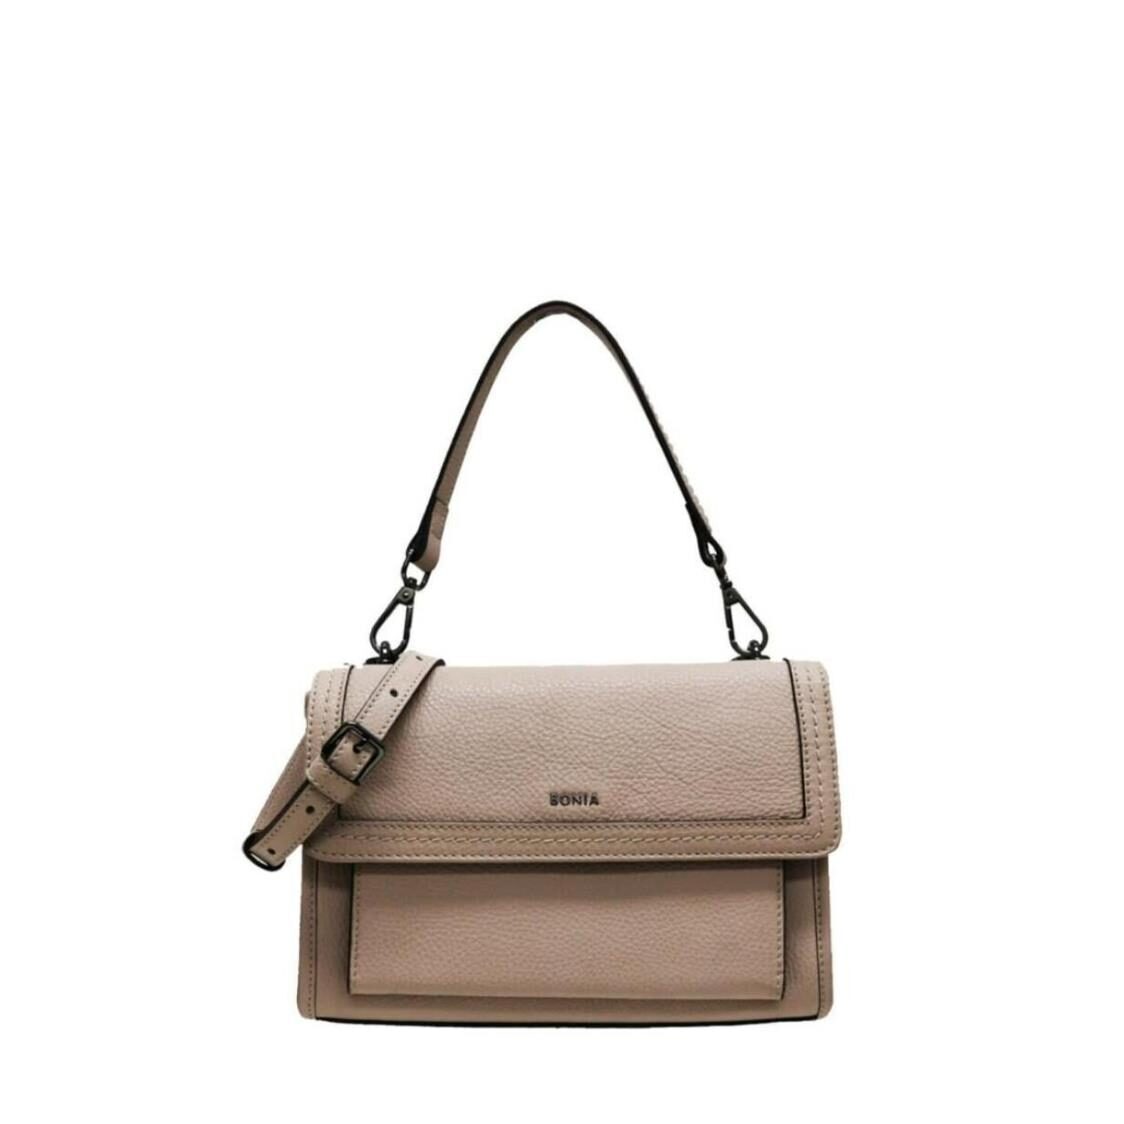 Bonia Leather Shoulder Bag S 801411-001-64